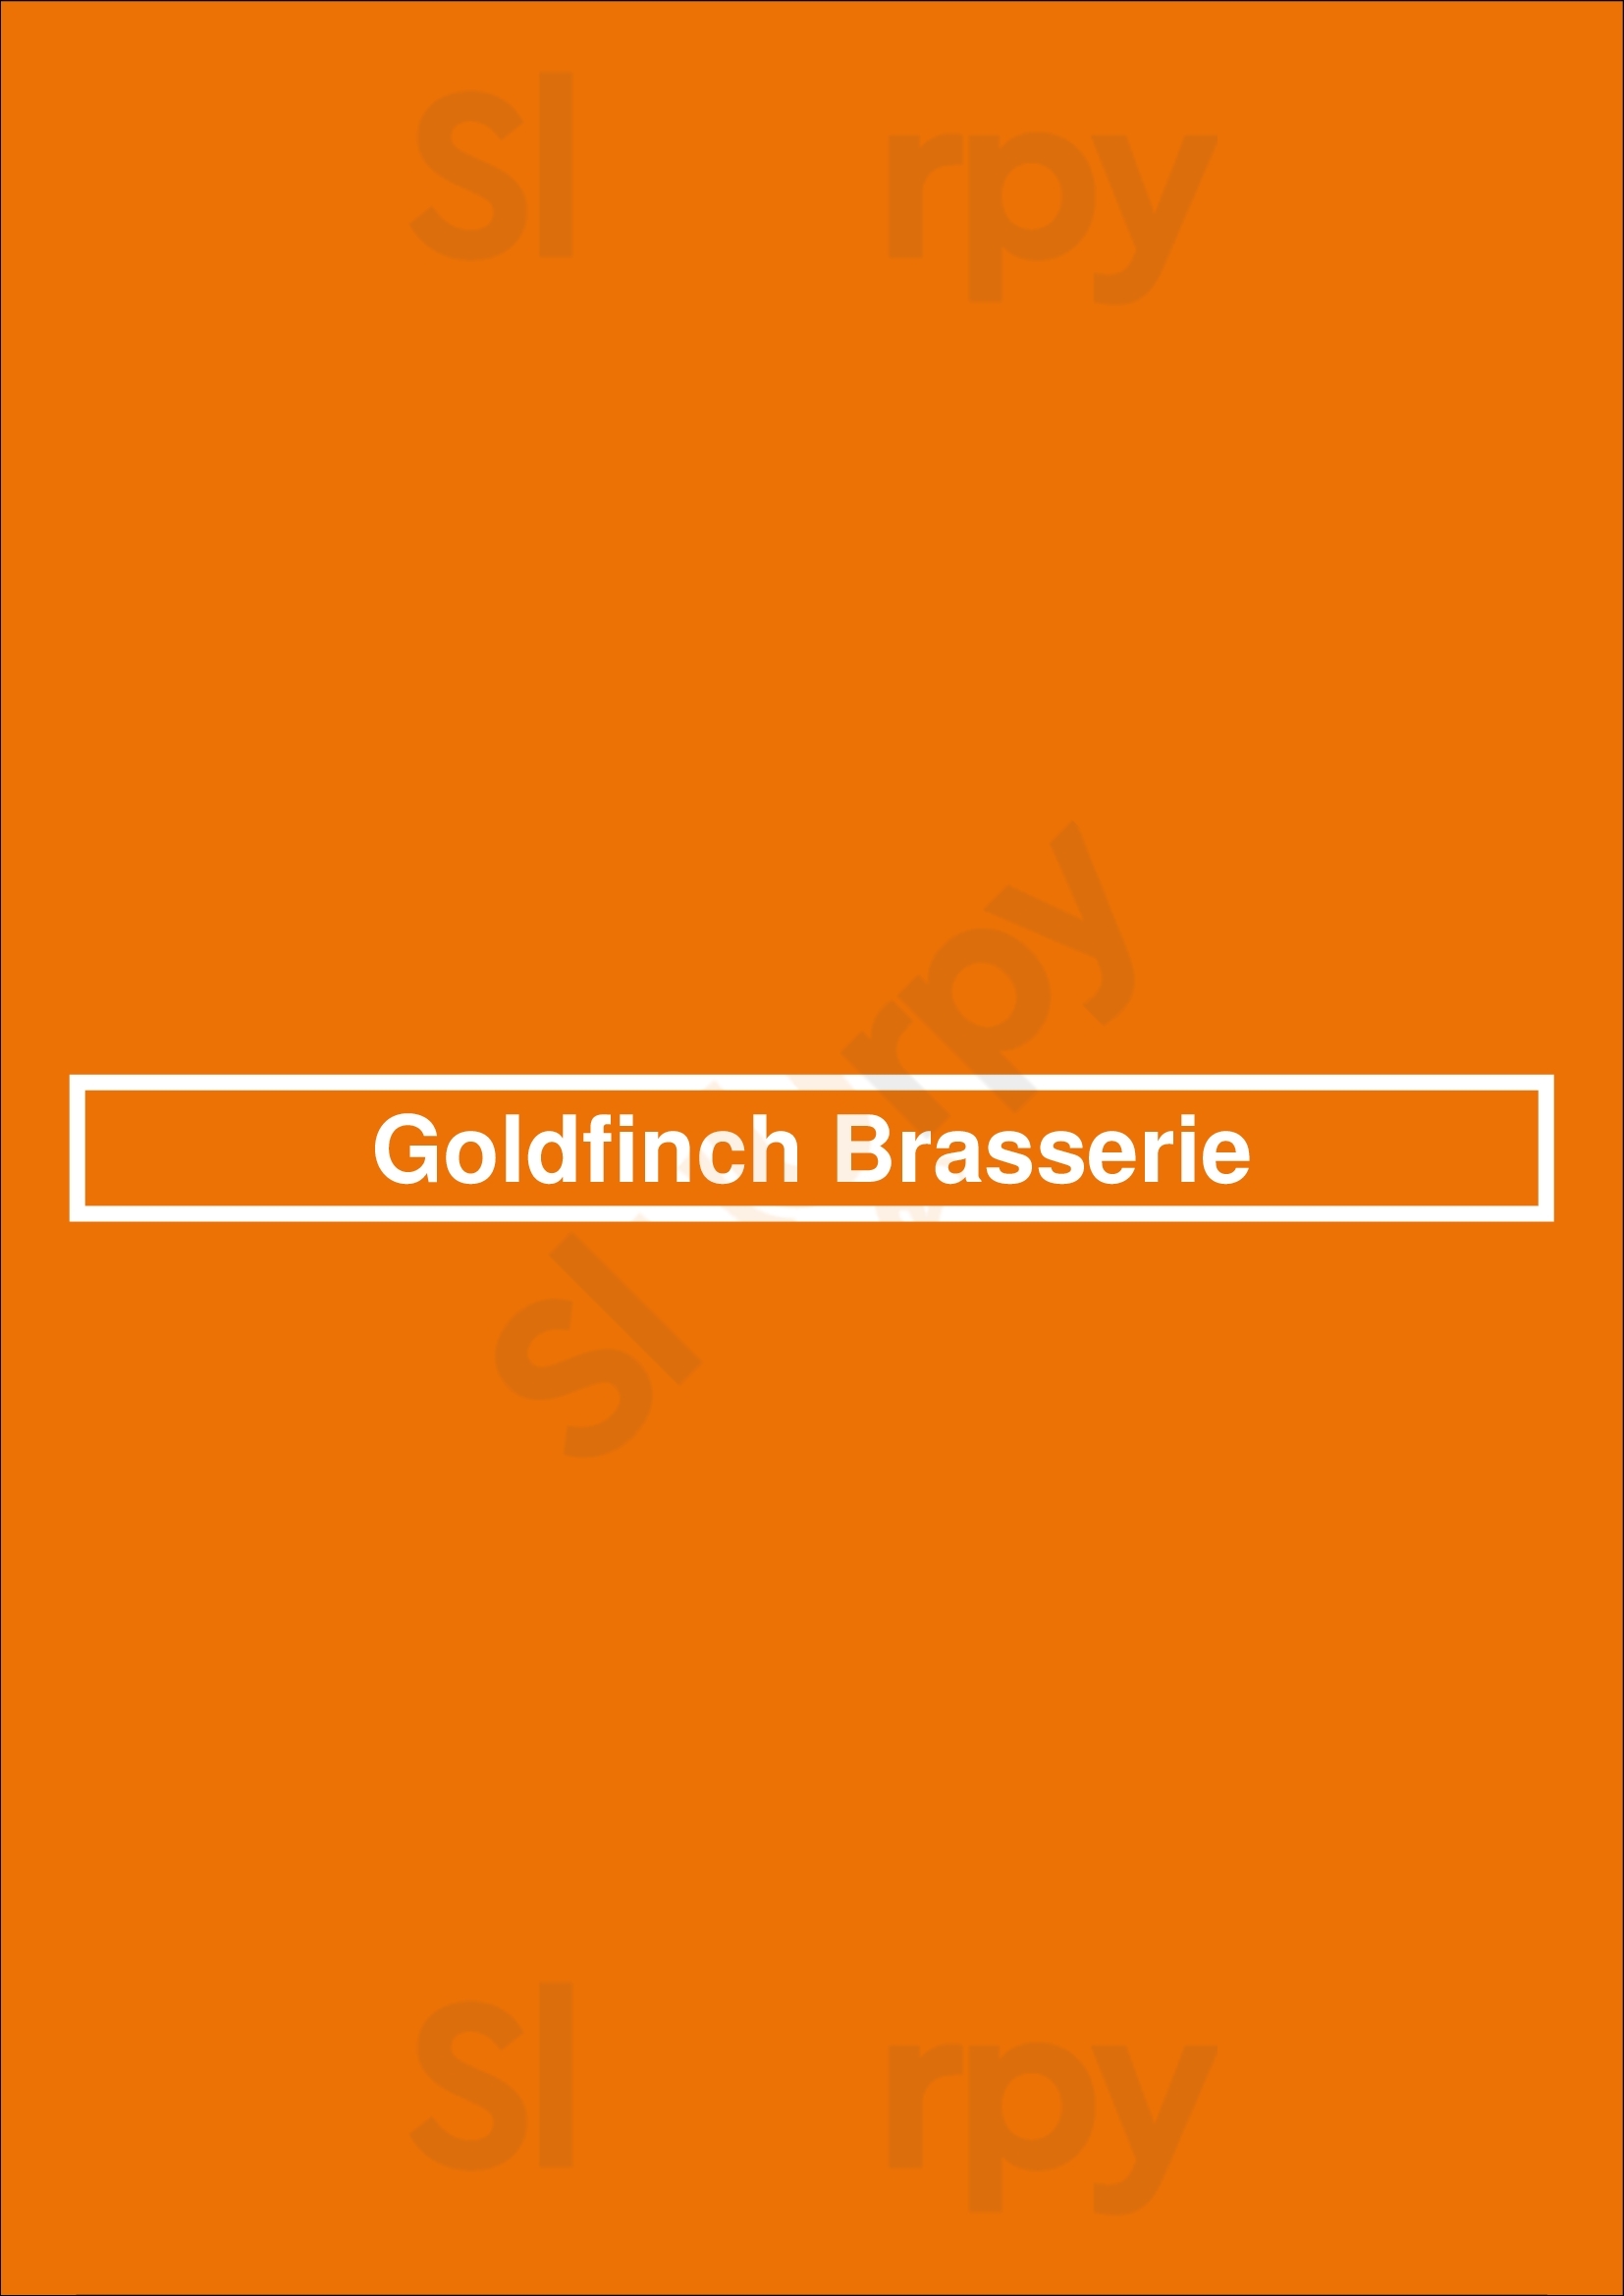 Goldfinch Brasserie Amsterdam Menu - 1